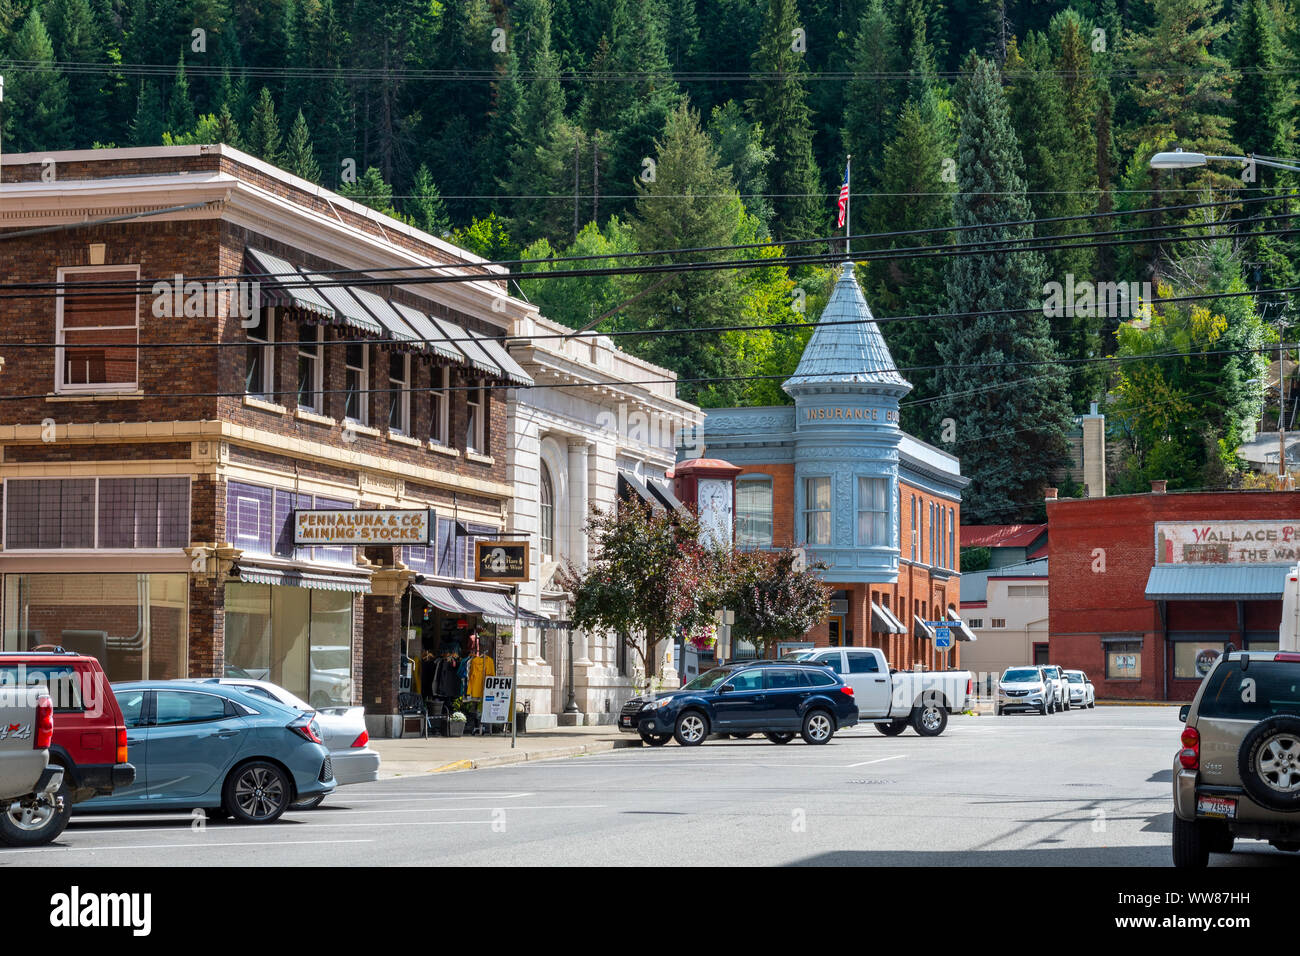 La strada principale che corre attraverso il centro storico 1800 città mineraria di Wallace, Idaho, parte del progetto Superfund site in Silver Valley, Idaho, Stati Uniti d'America. Foto Stock